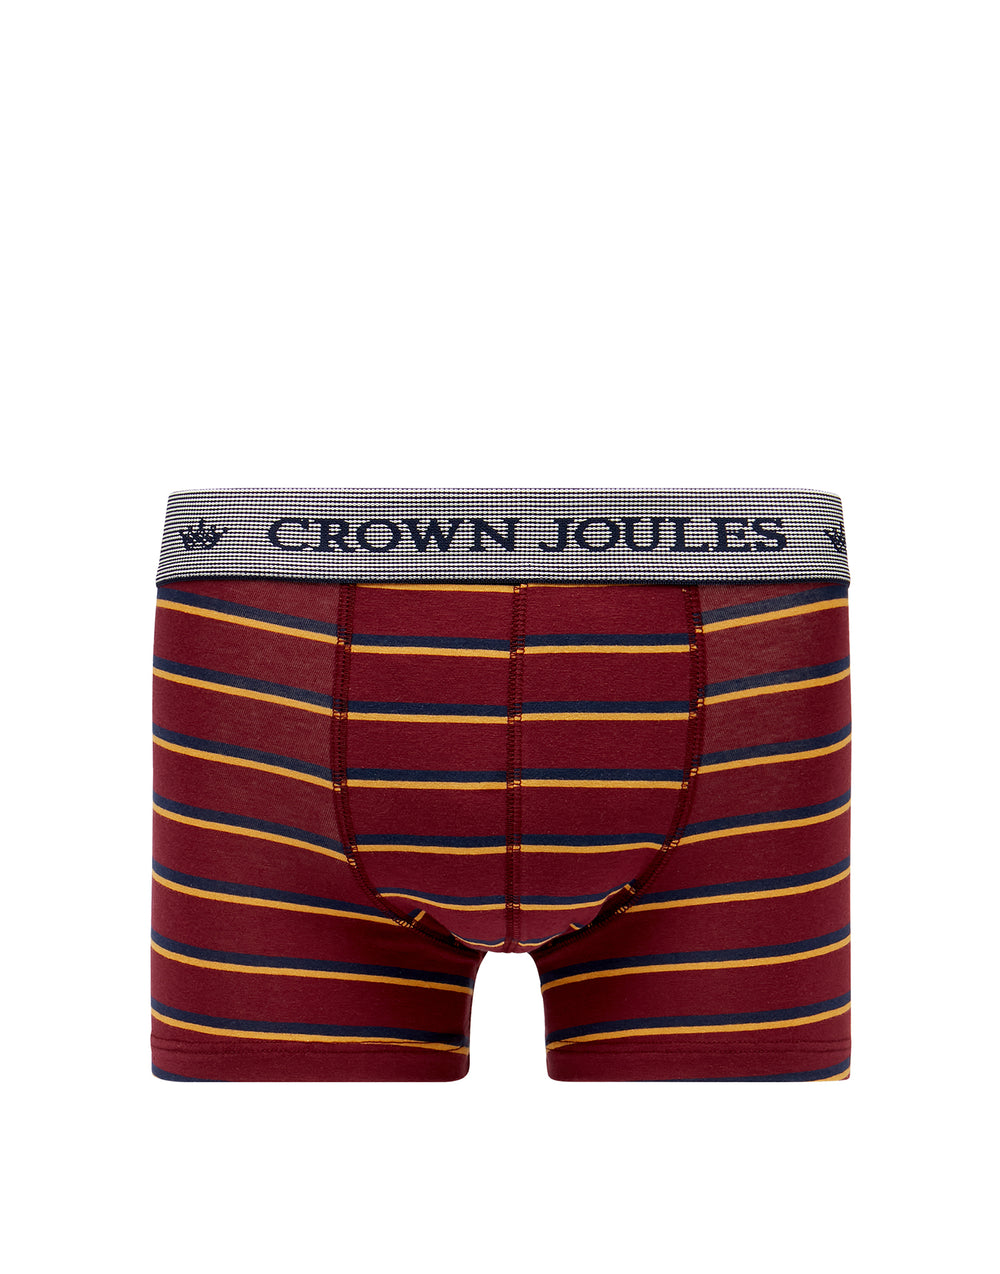 Joules Mens Crown Joules 2 Pack Underwear 